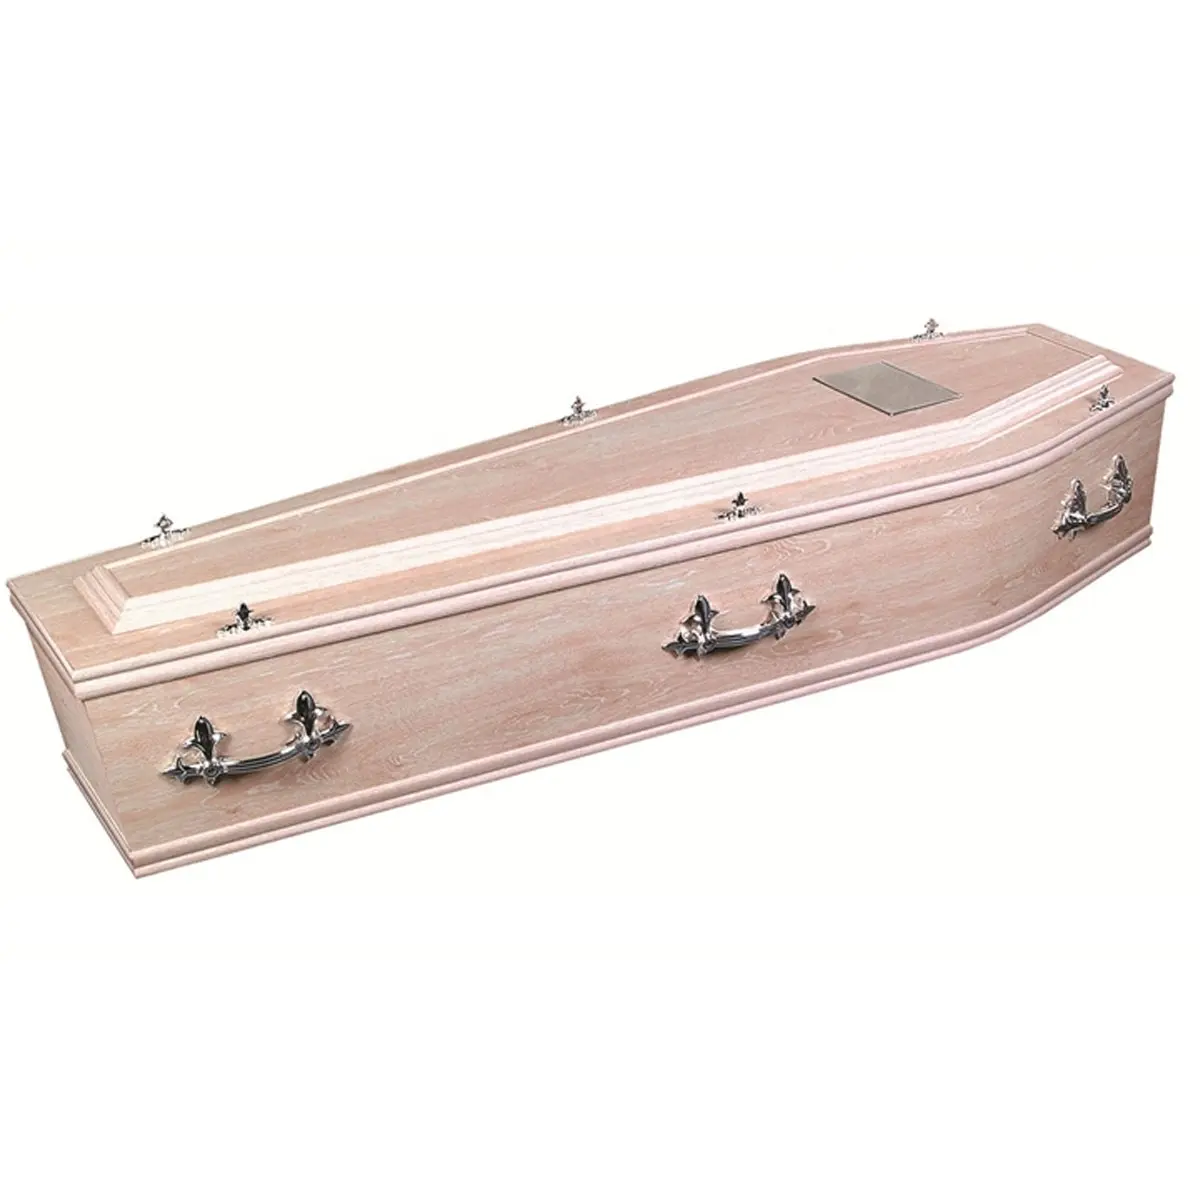 Ataúd de madera de estilo italiano europeo para mujer, ataúd de madera maciza, bóveda de entierro, cama combinada, caja funeraria de madera, urna de cremación